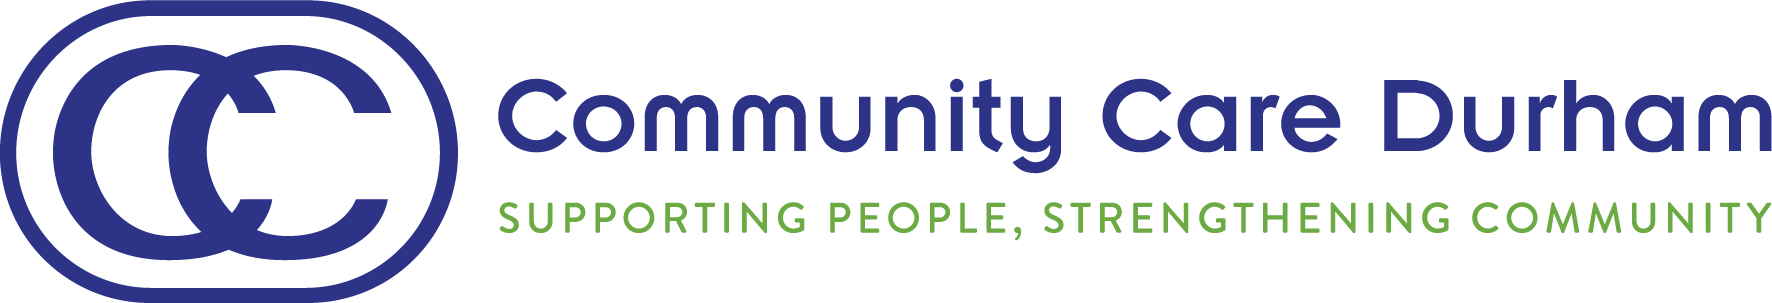 logo: Community Care Durham